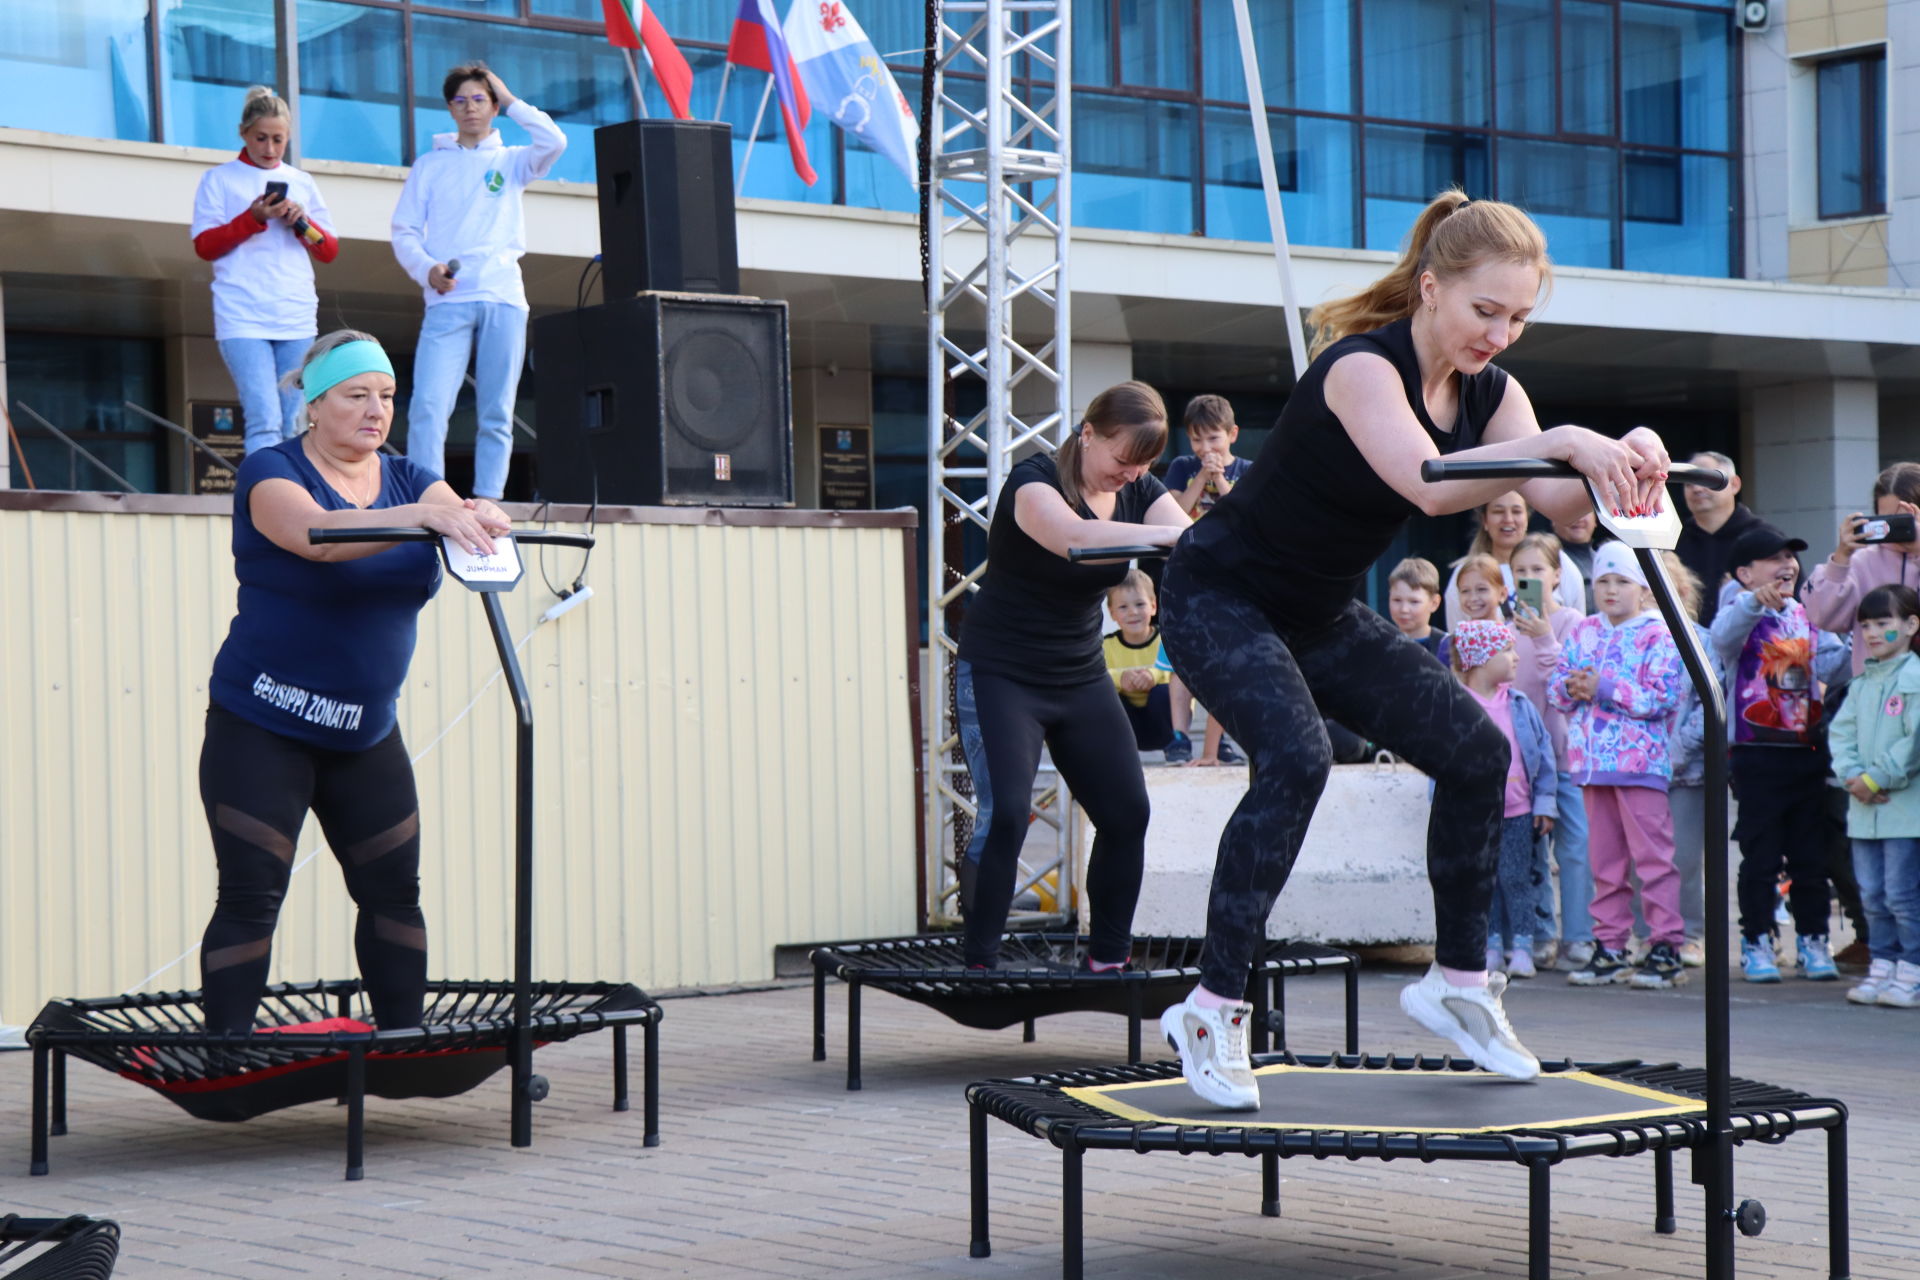 «Здоровый Менделеевск» открыл возможность провести лето весело и спортивно